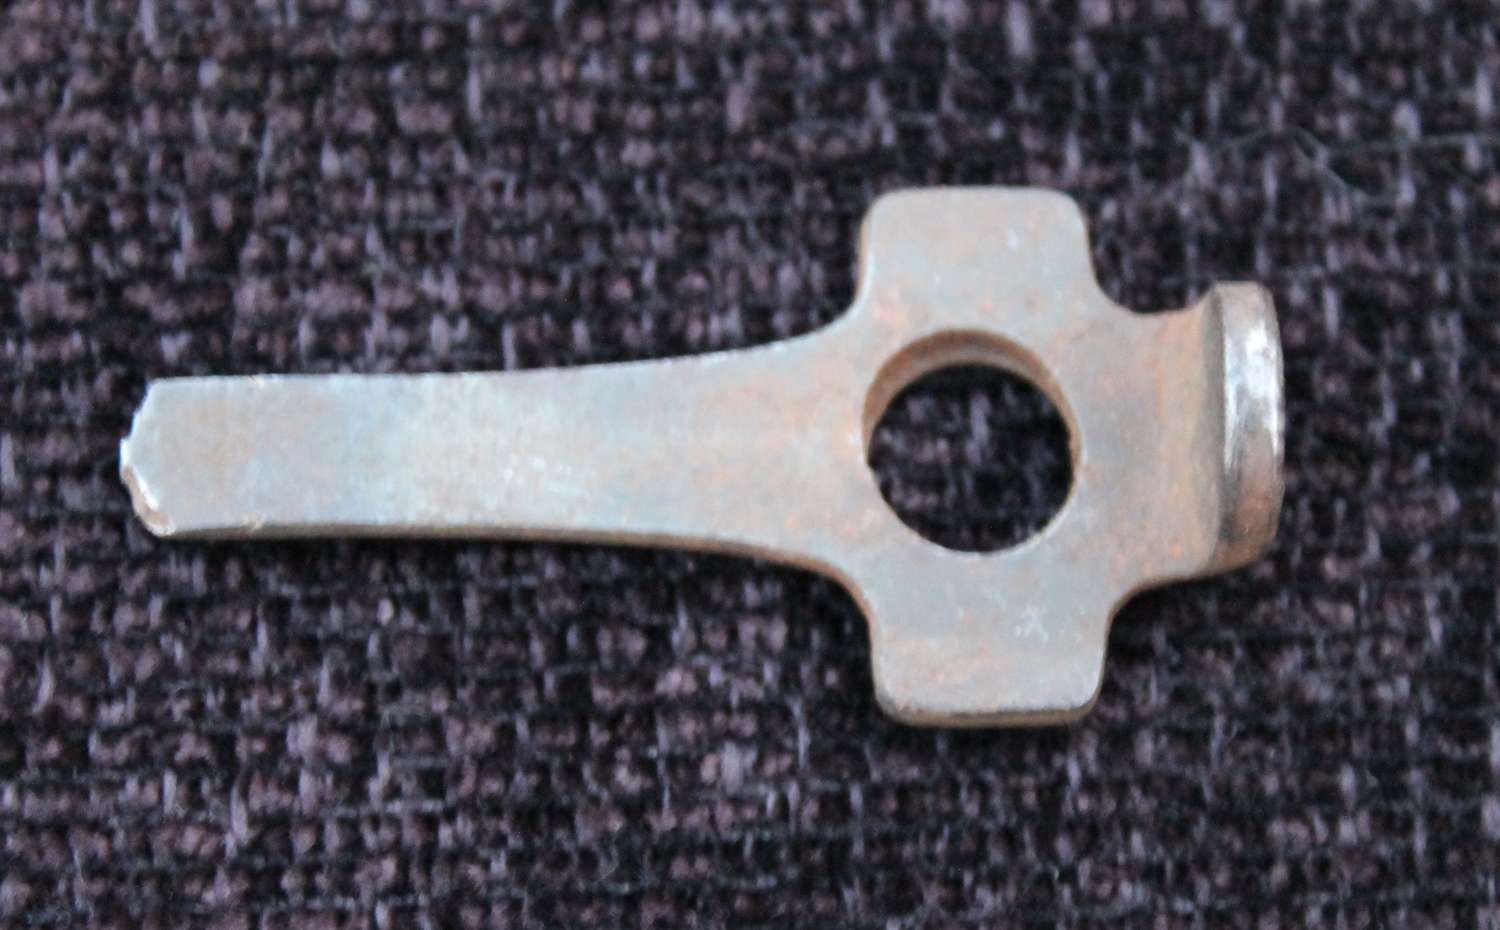 An Original Luger Stripping Tool